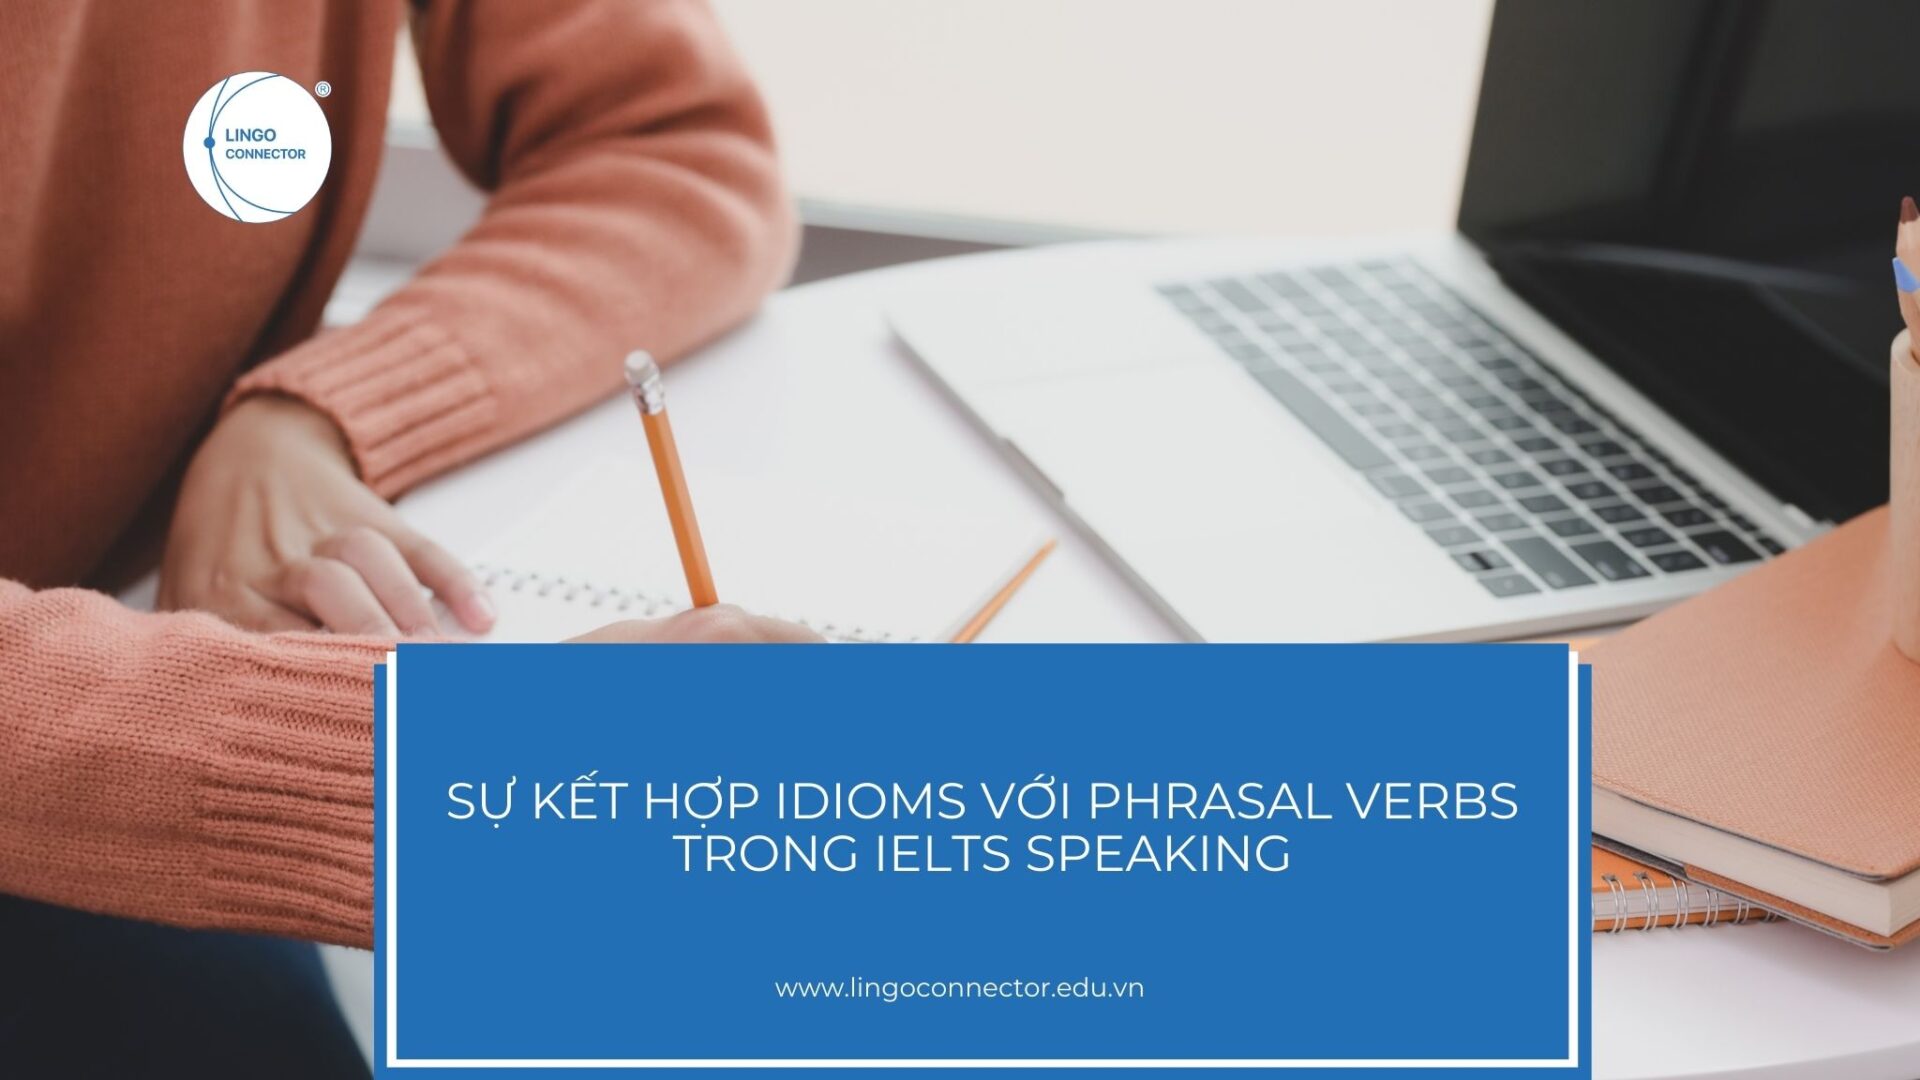 Sự kết hợp Idioms và Phrasal verbs